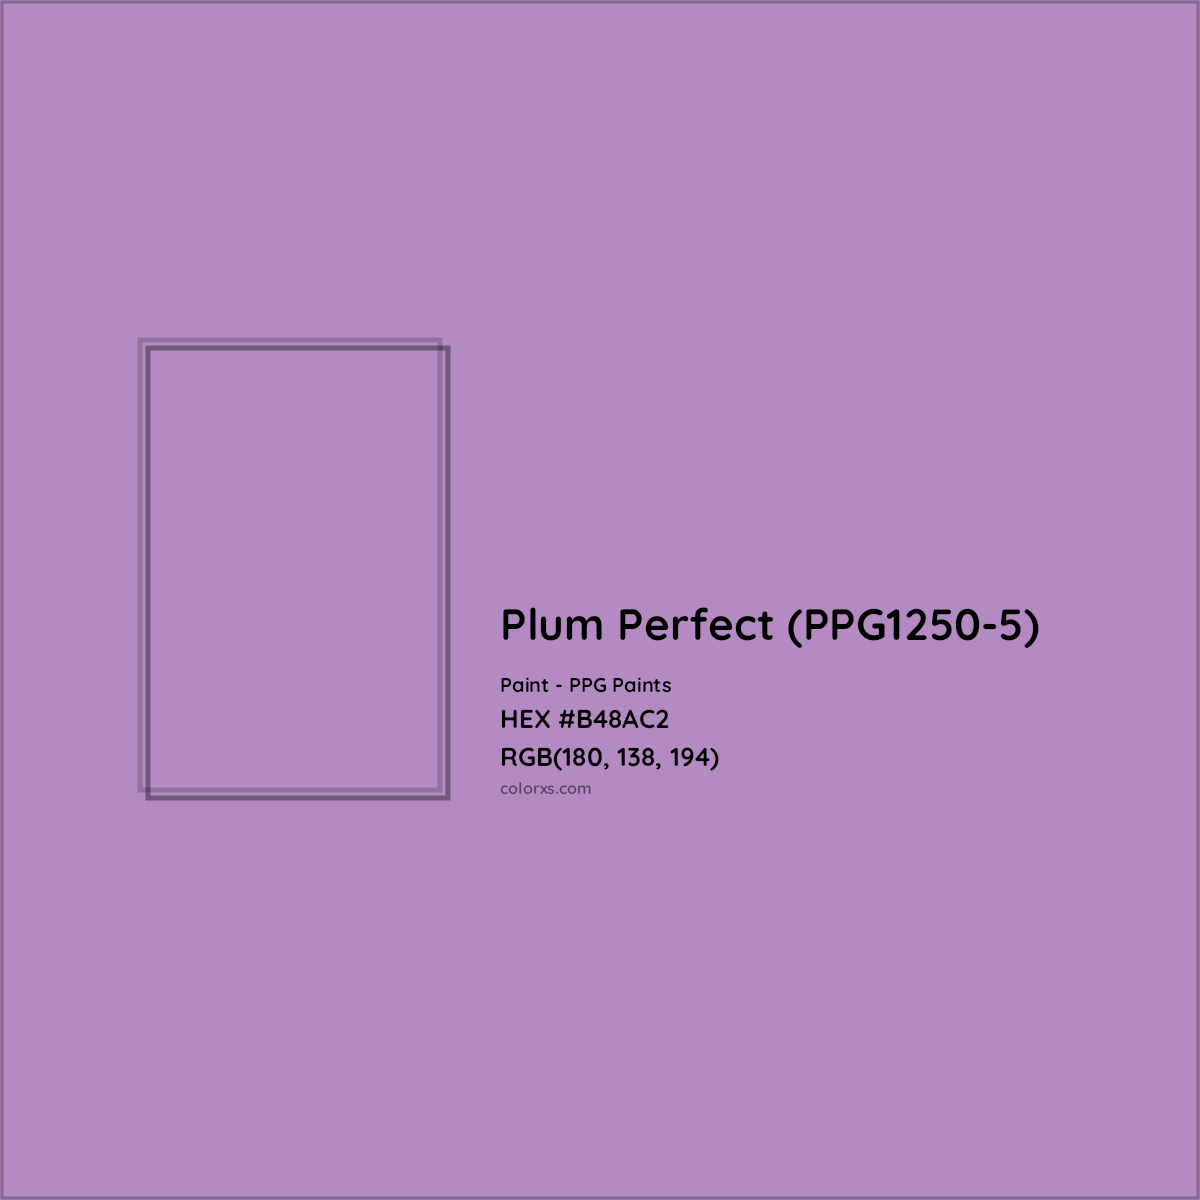 HEX #B48AC2 Plum Perfect (PPG1250-5) Paint PPG Paints - Color Code